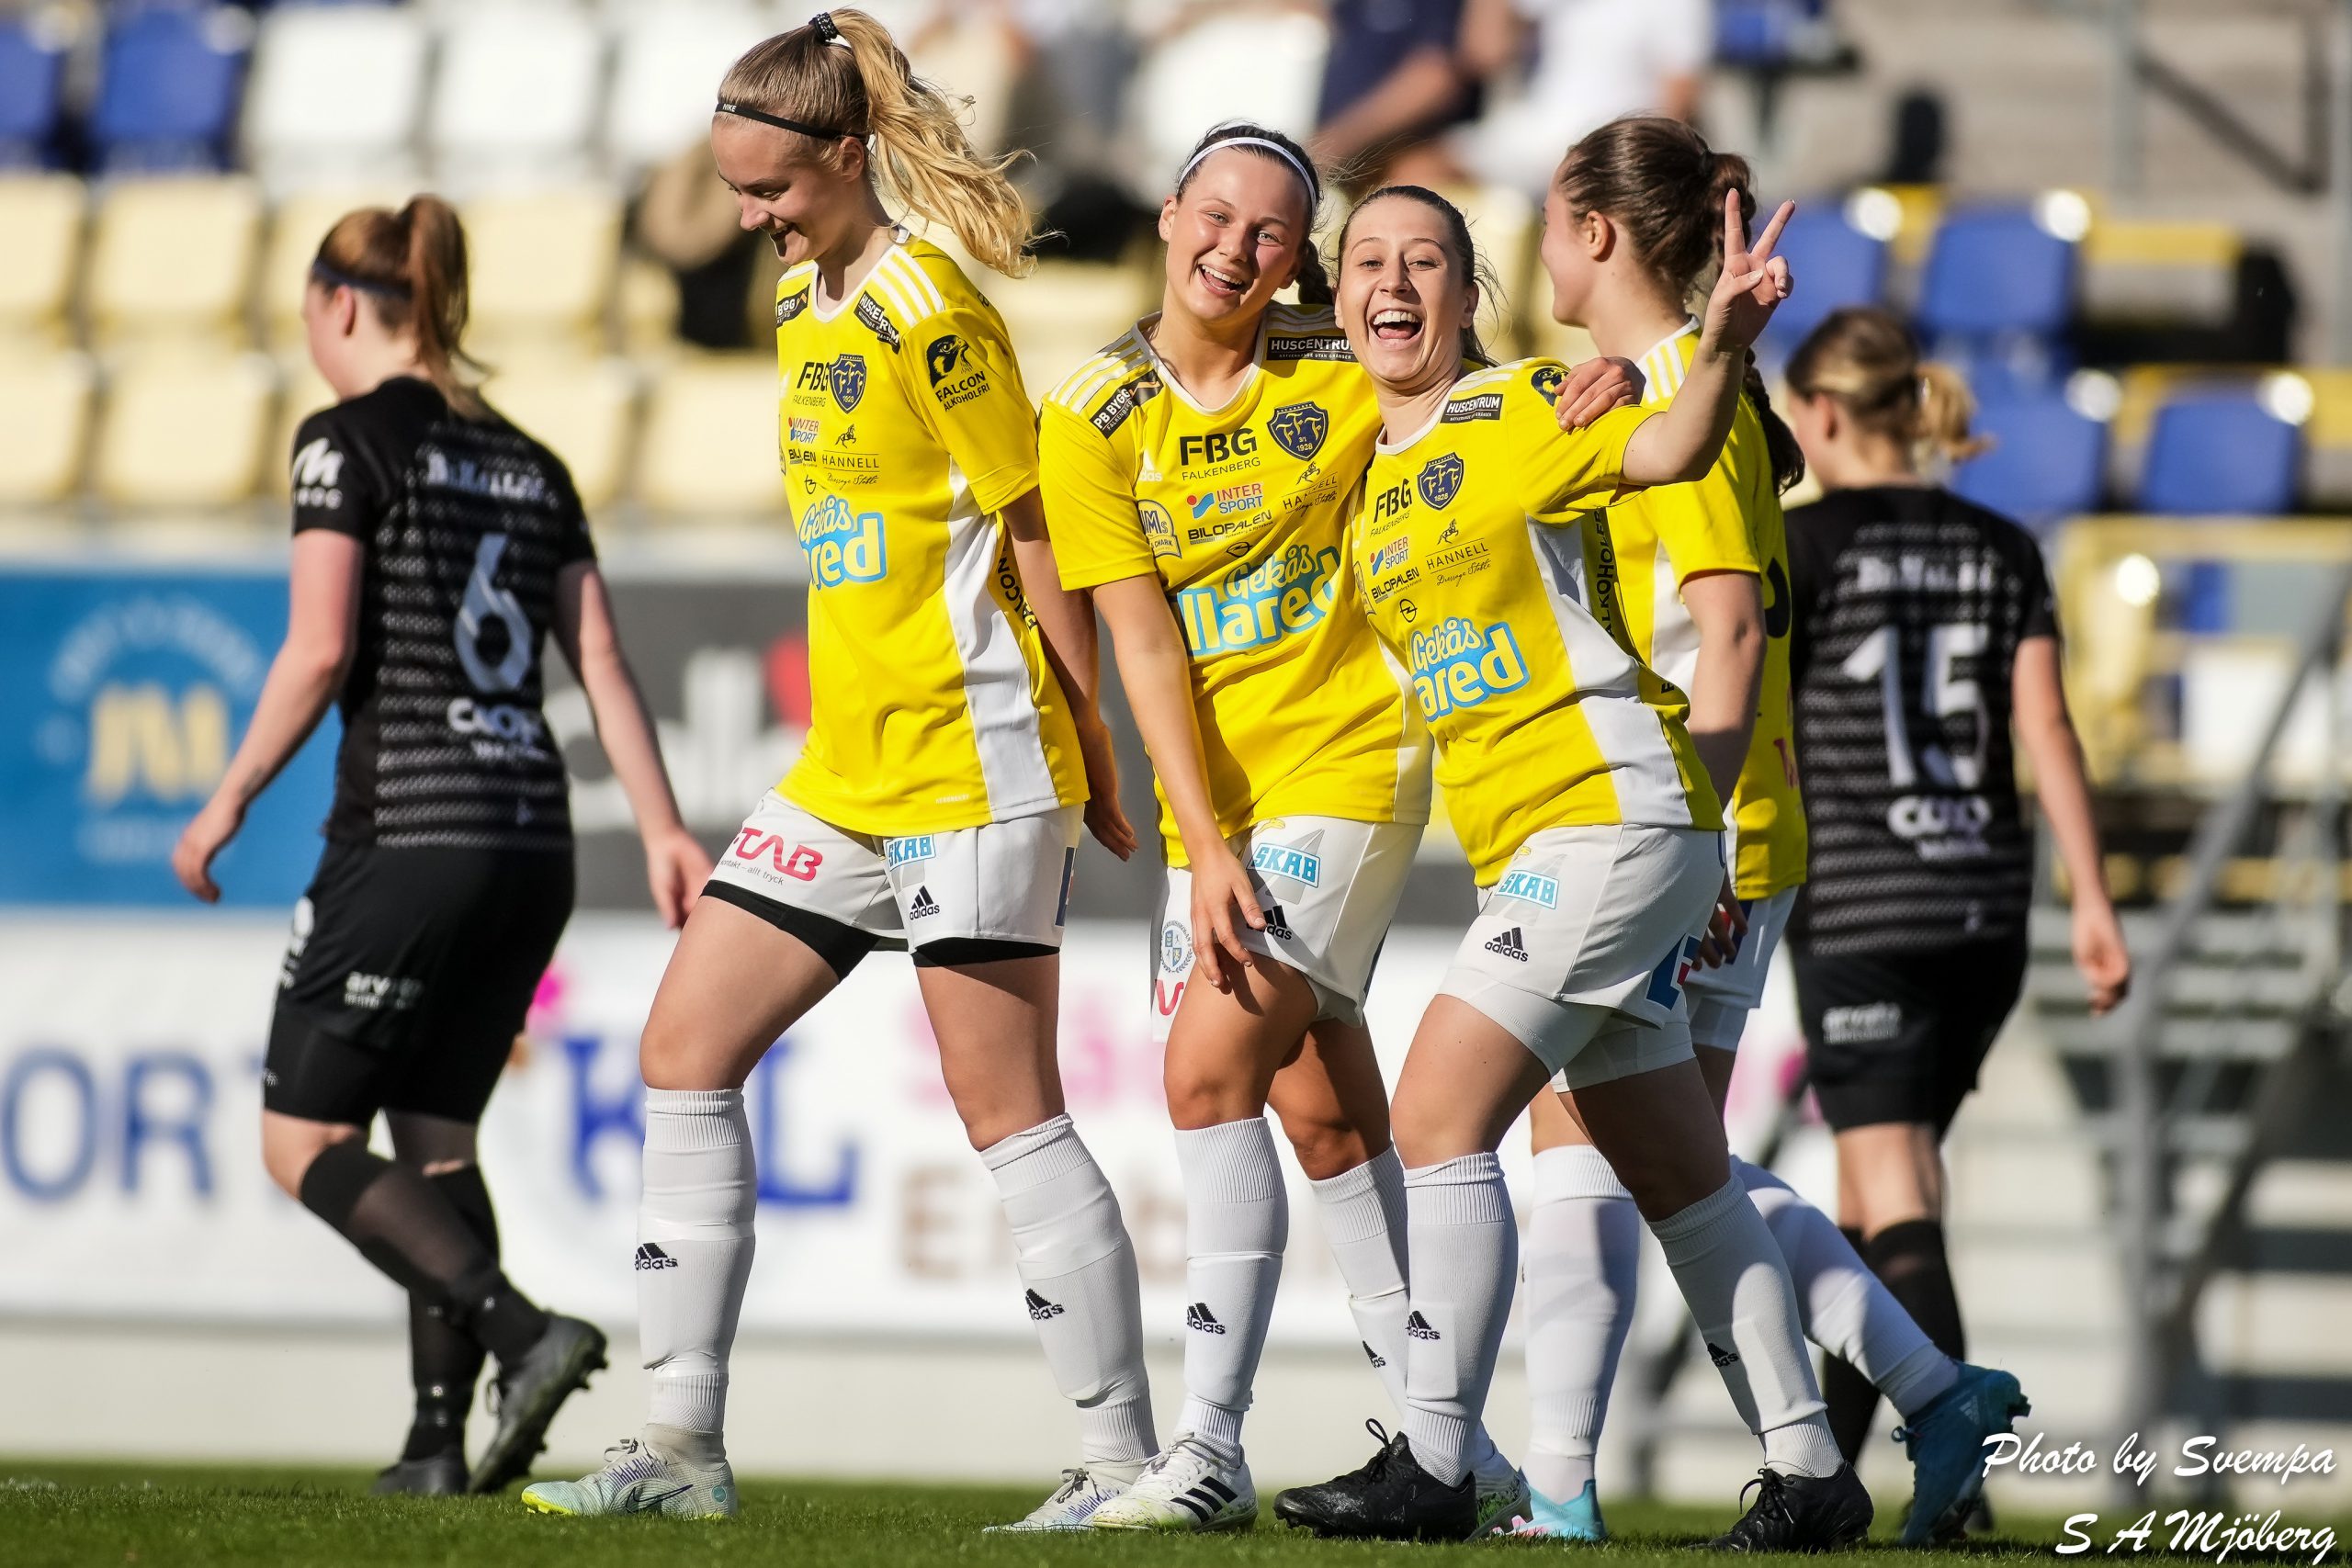 7-1-seger över Lilla Träslöv: ”Vi gjorde en otroligt bra match”